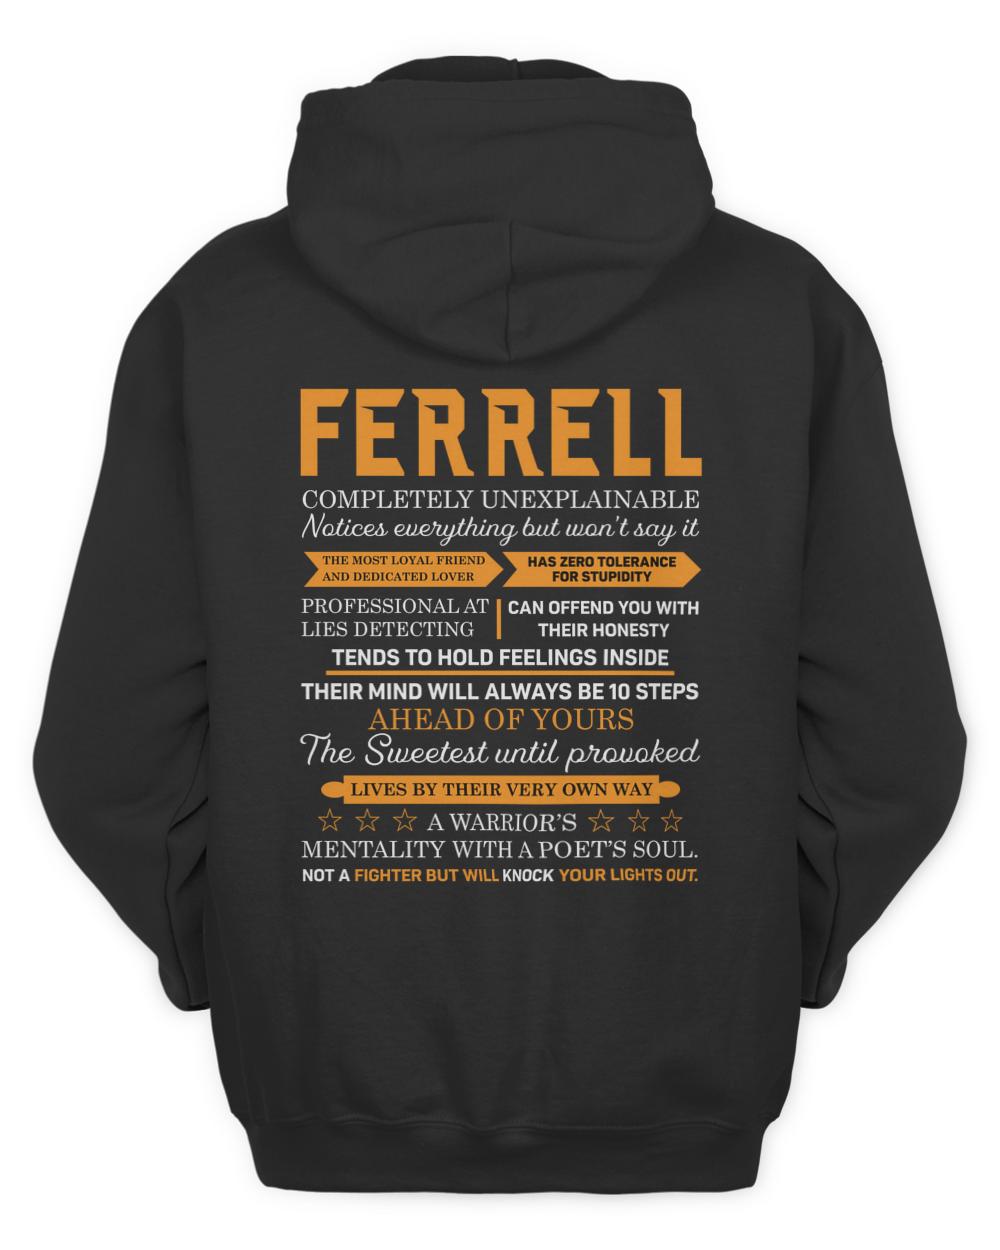 FERRELL-A2-N1